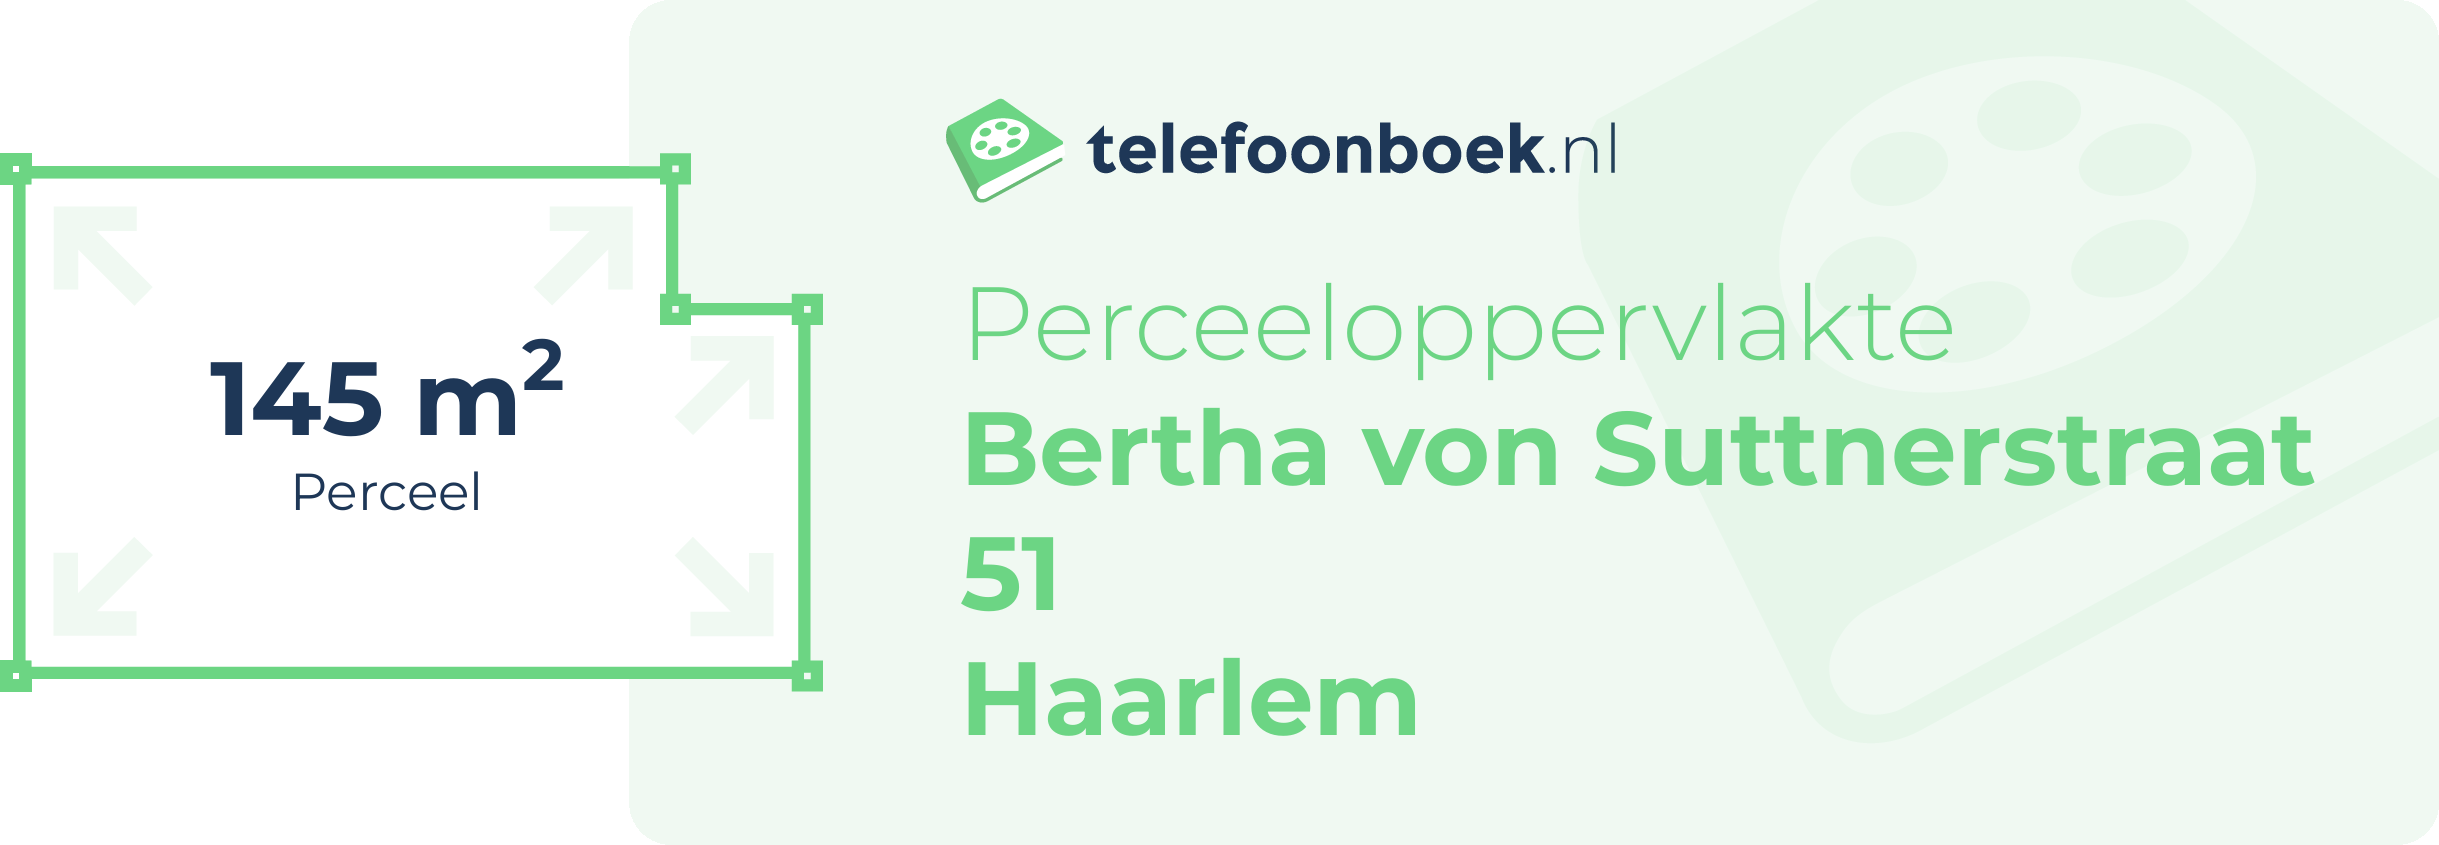 Perceeloppervlakte Bertha Von Suttnerstraat 51 Haarlem